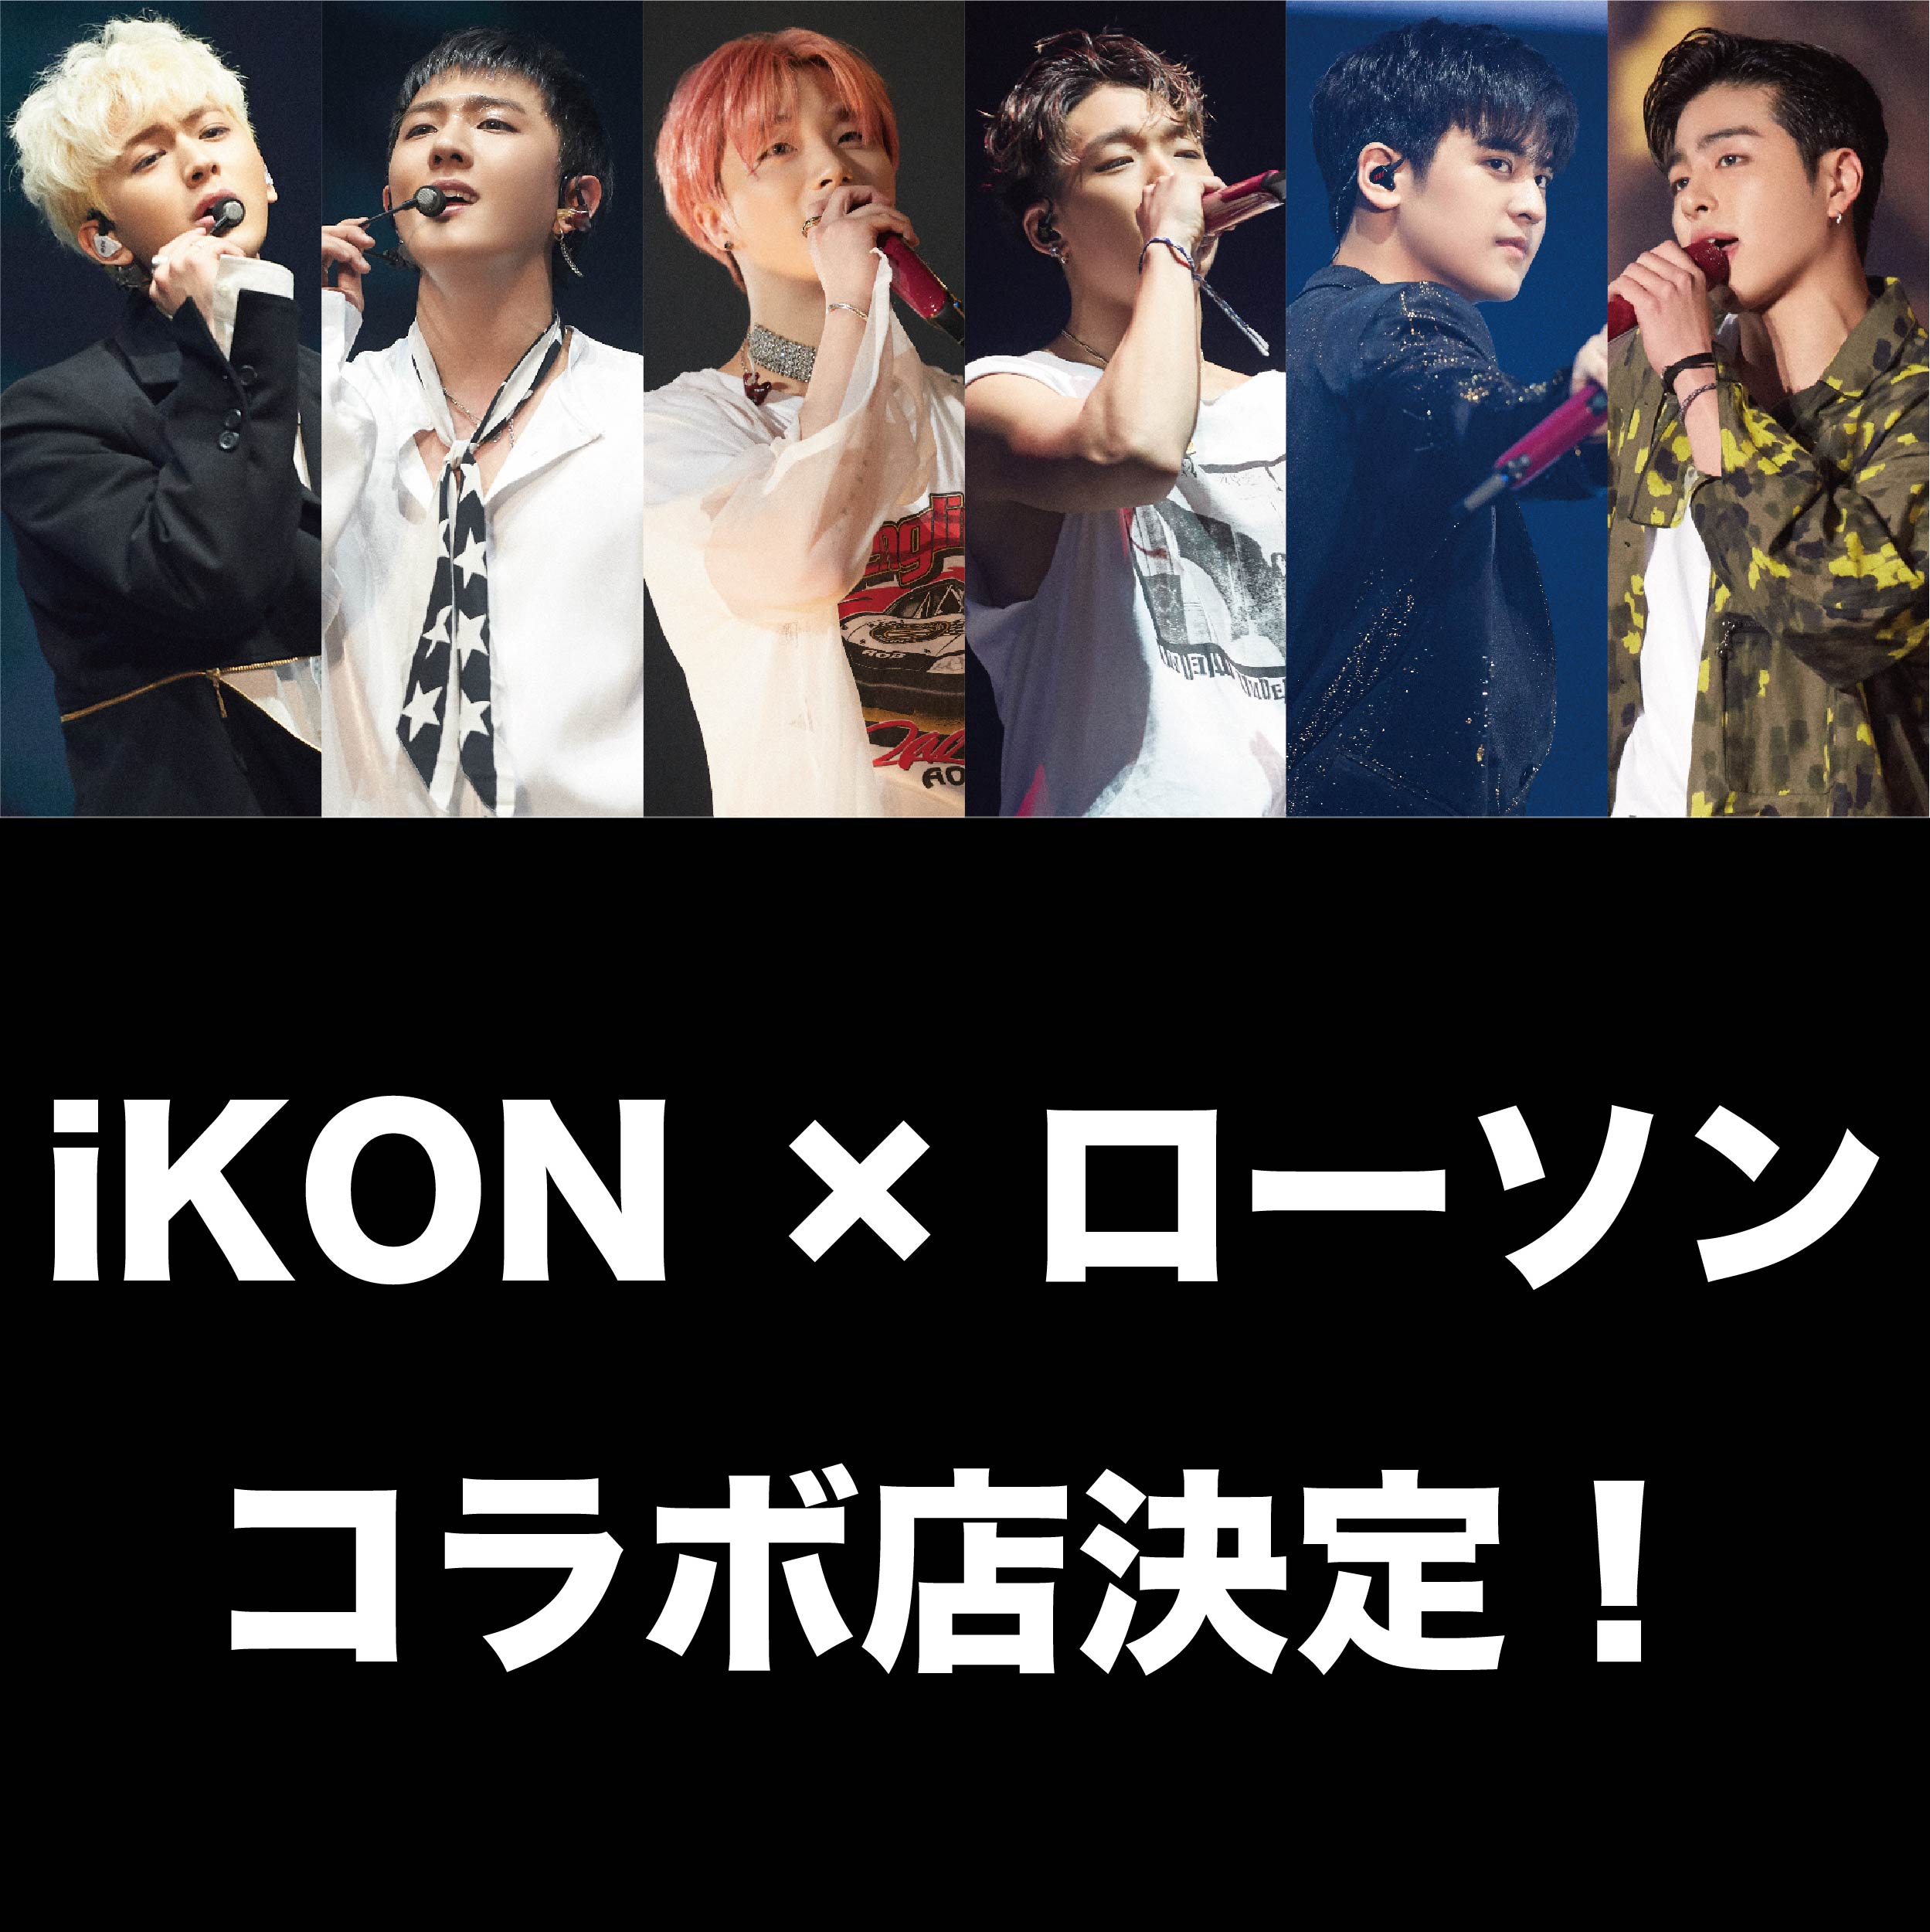 Ikon Japan Tour 19 開催記念 ローソンコラボ店企画決定 Ikon Official Website